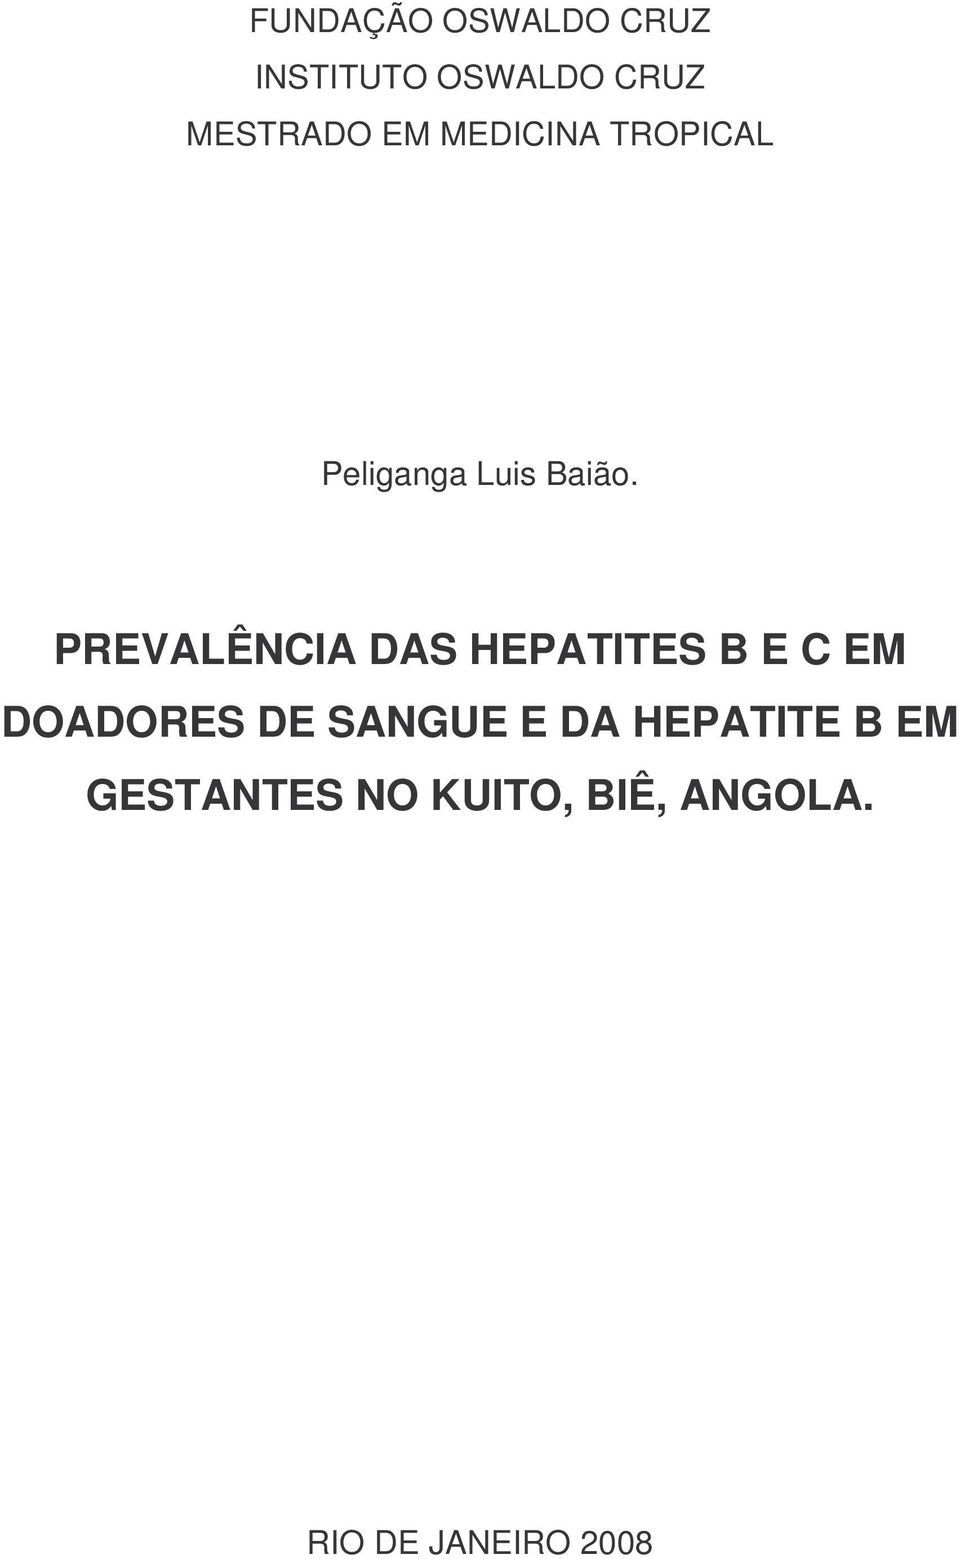 Prevalencia Das Hepatites B E C Em Doadores De Sangue E Da